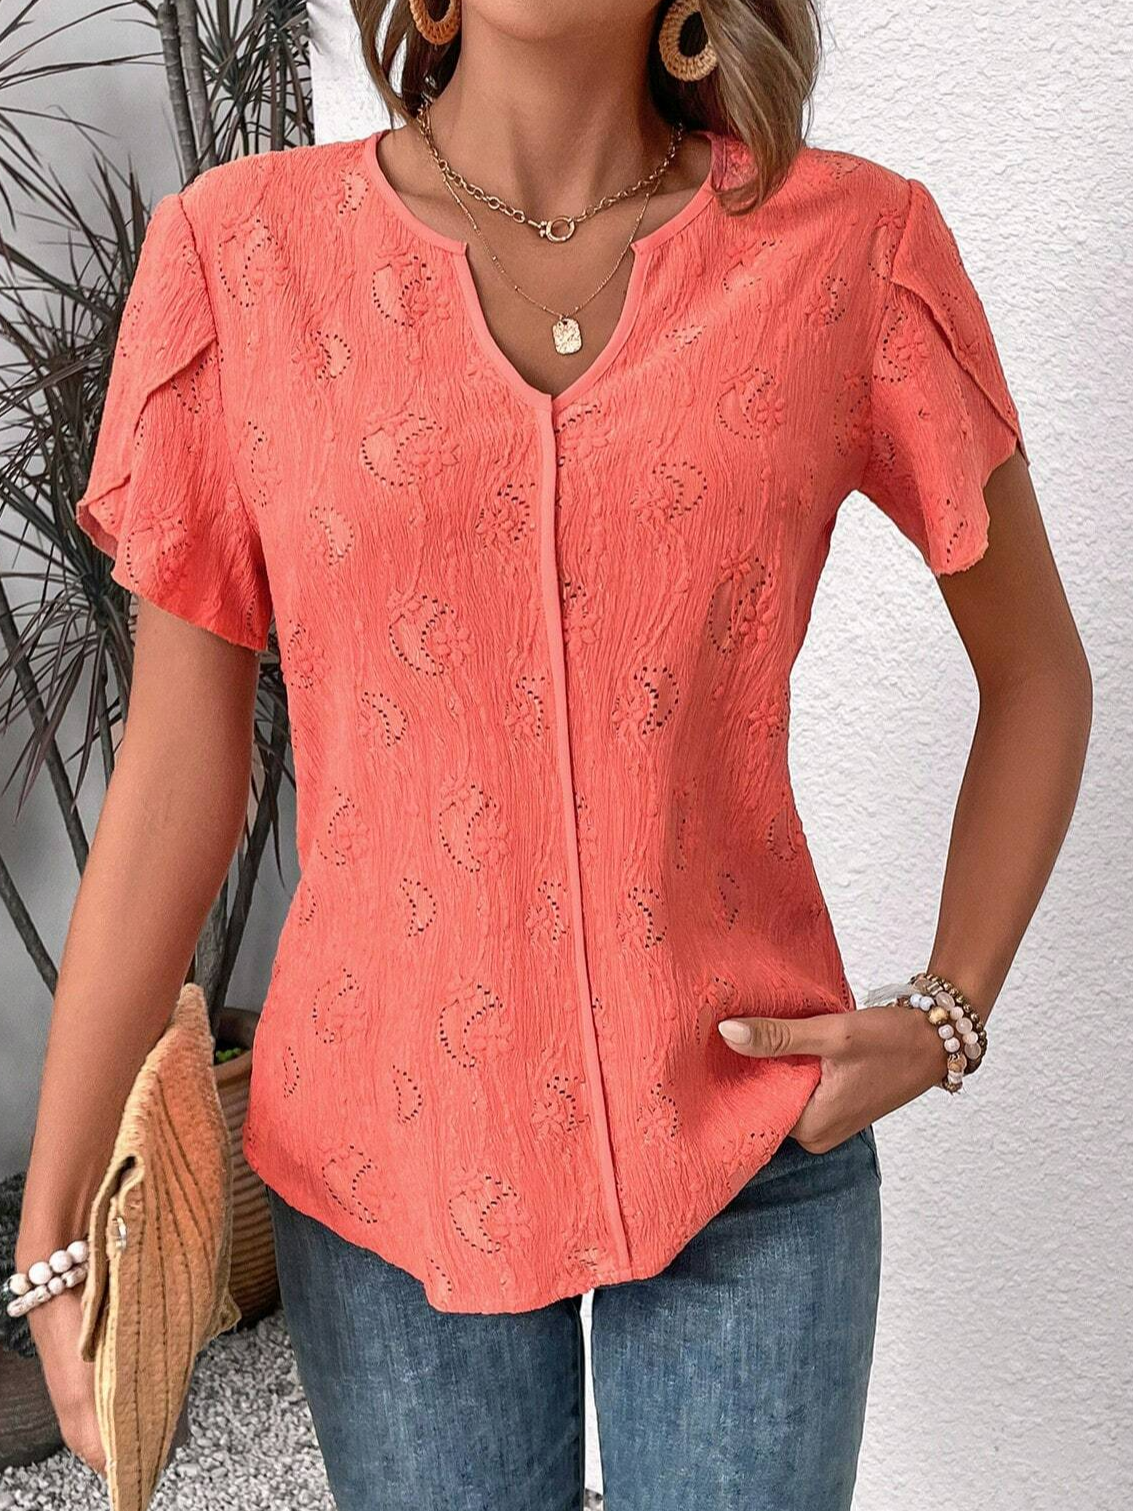 Damen Sommer Bluse Baumwolle Geknöpft Shirts Unifarben